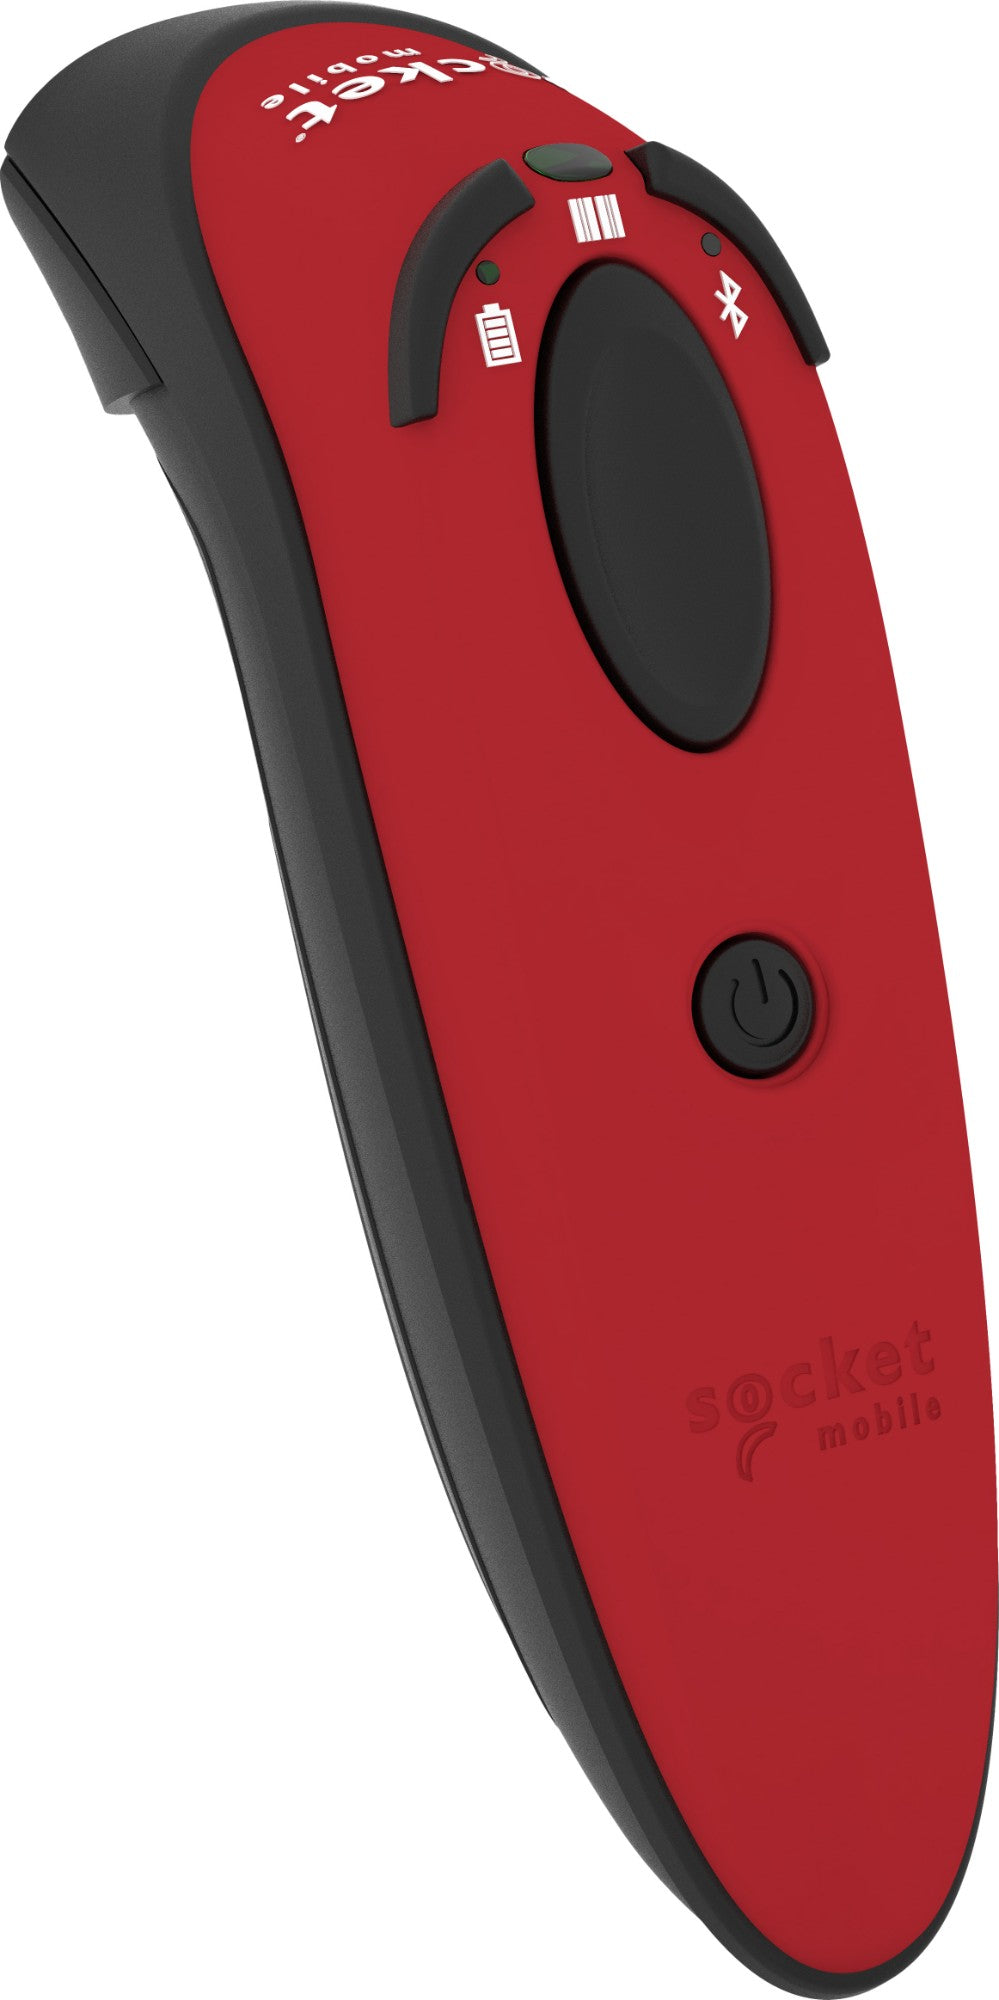 Socket Mobile DuraScan D740 Handheld bar code reader 1D/2D LED Red